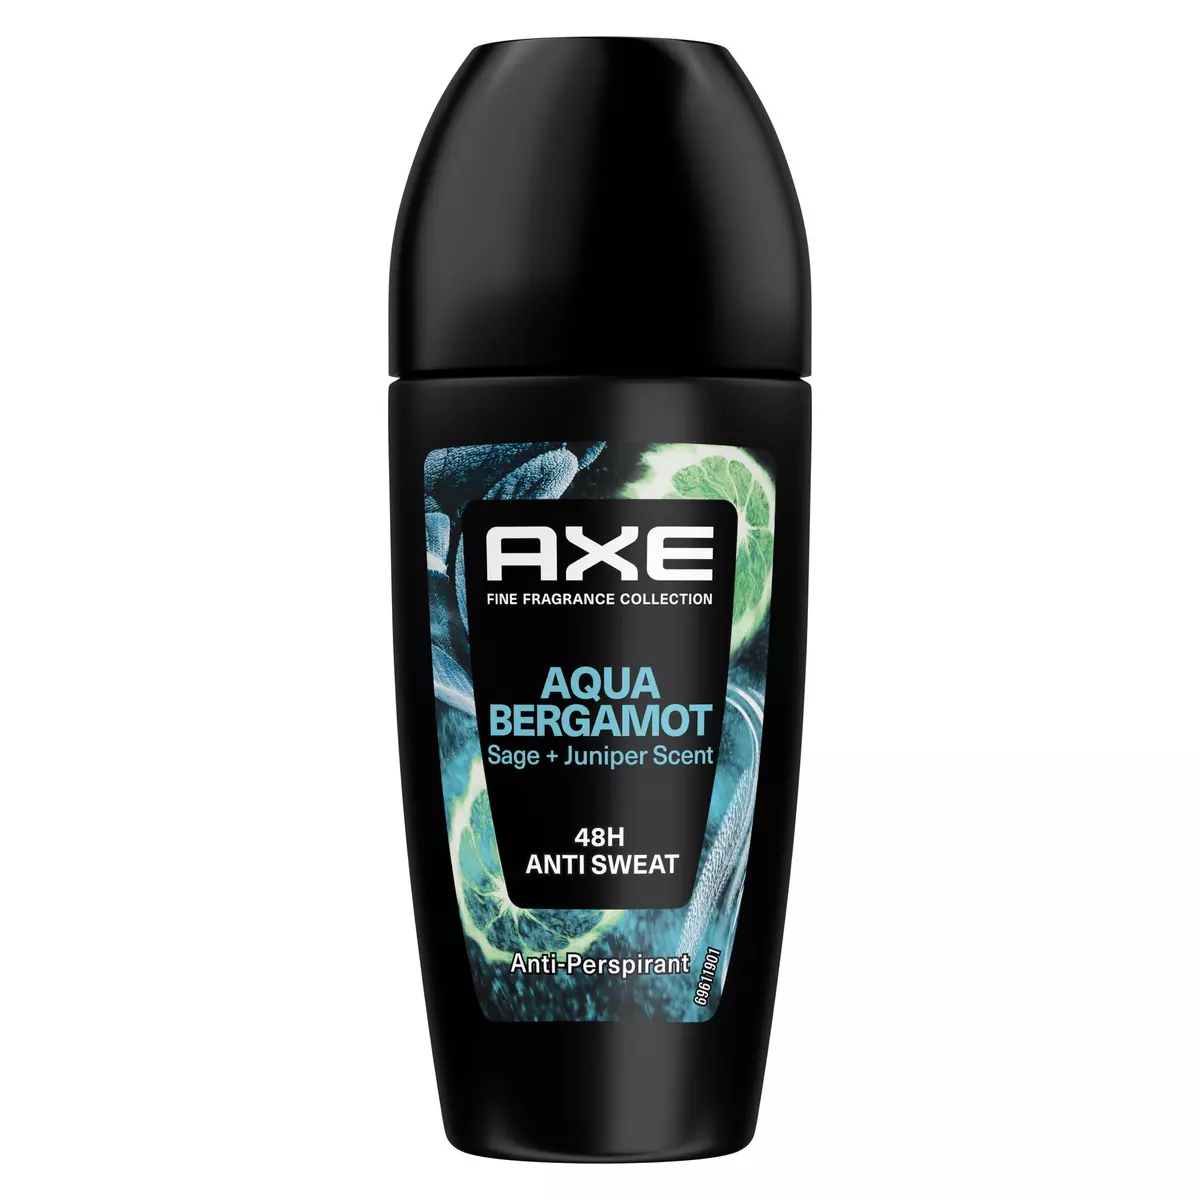 AXE Déodorant bille Aqua Bergamot antiperspirant 48h 50ml